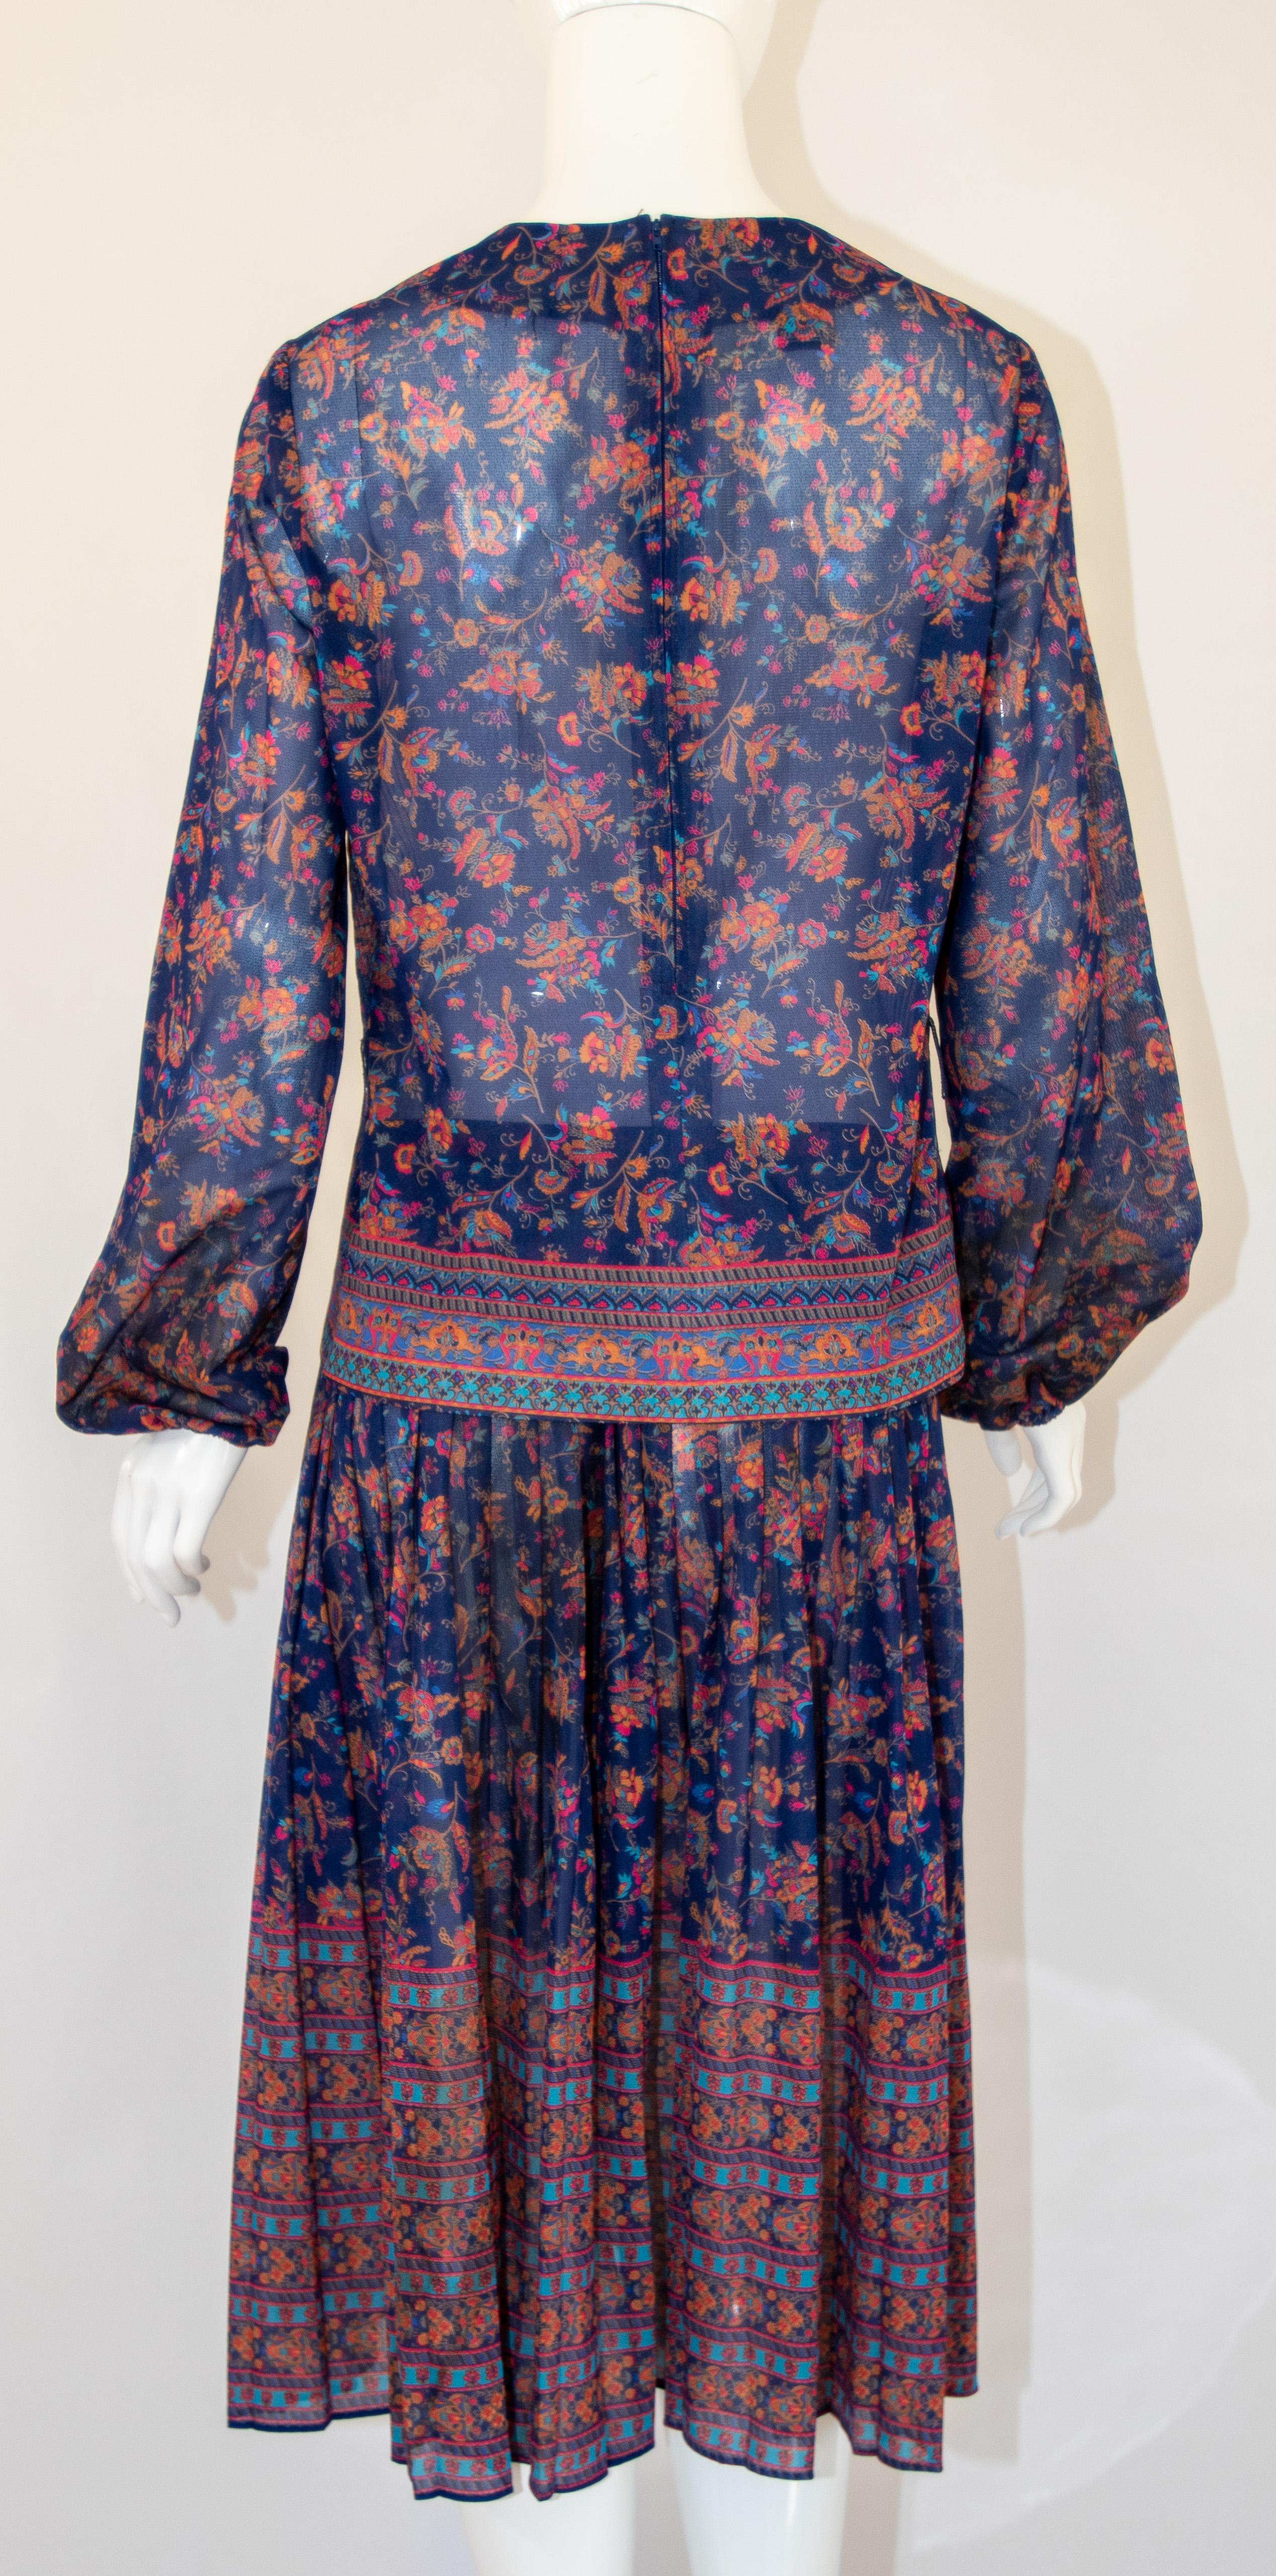 1970s Vintage Bohemian Floral Printed Dress Miss Magnin at I. Magnin For Sale 4